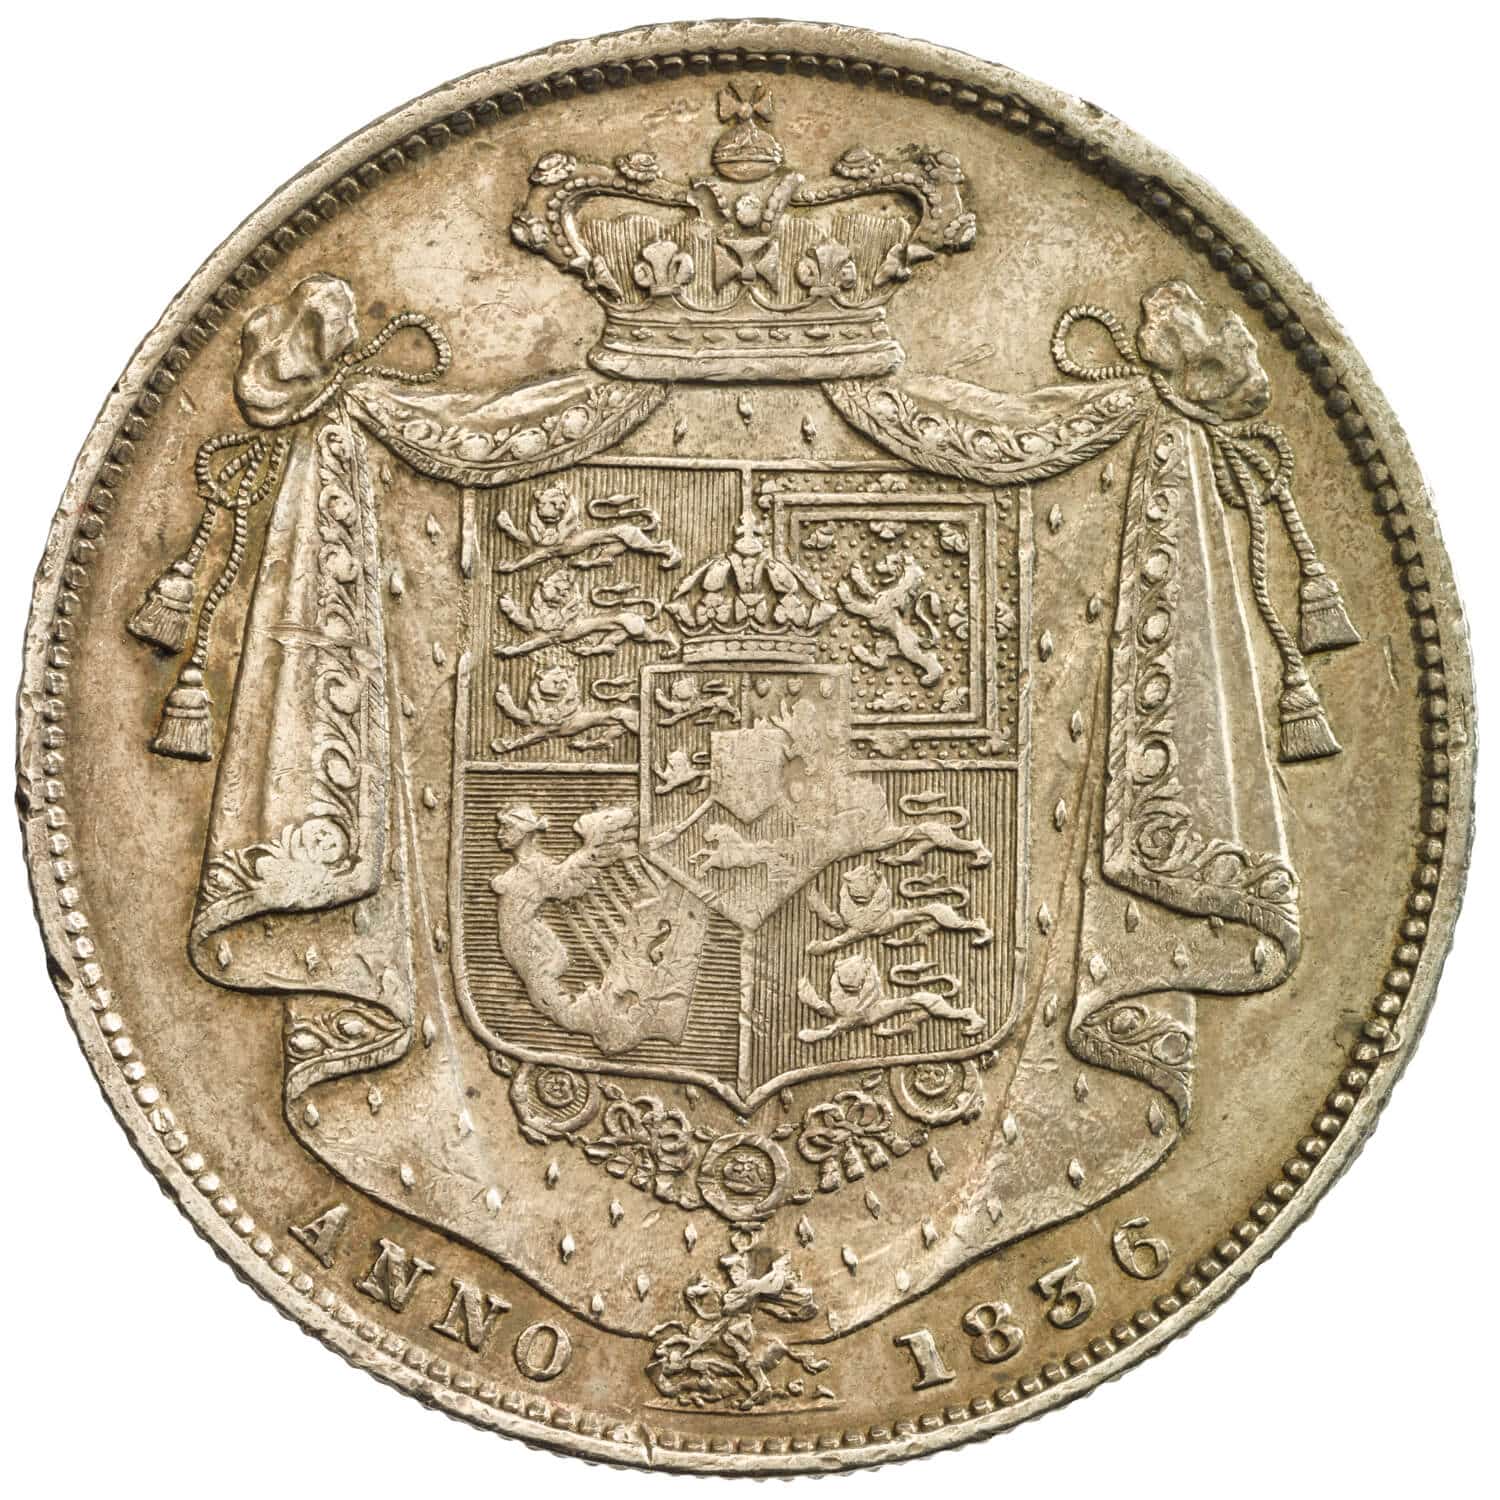 William IV Half-crown reverse